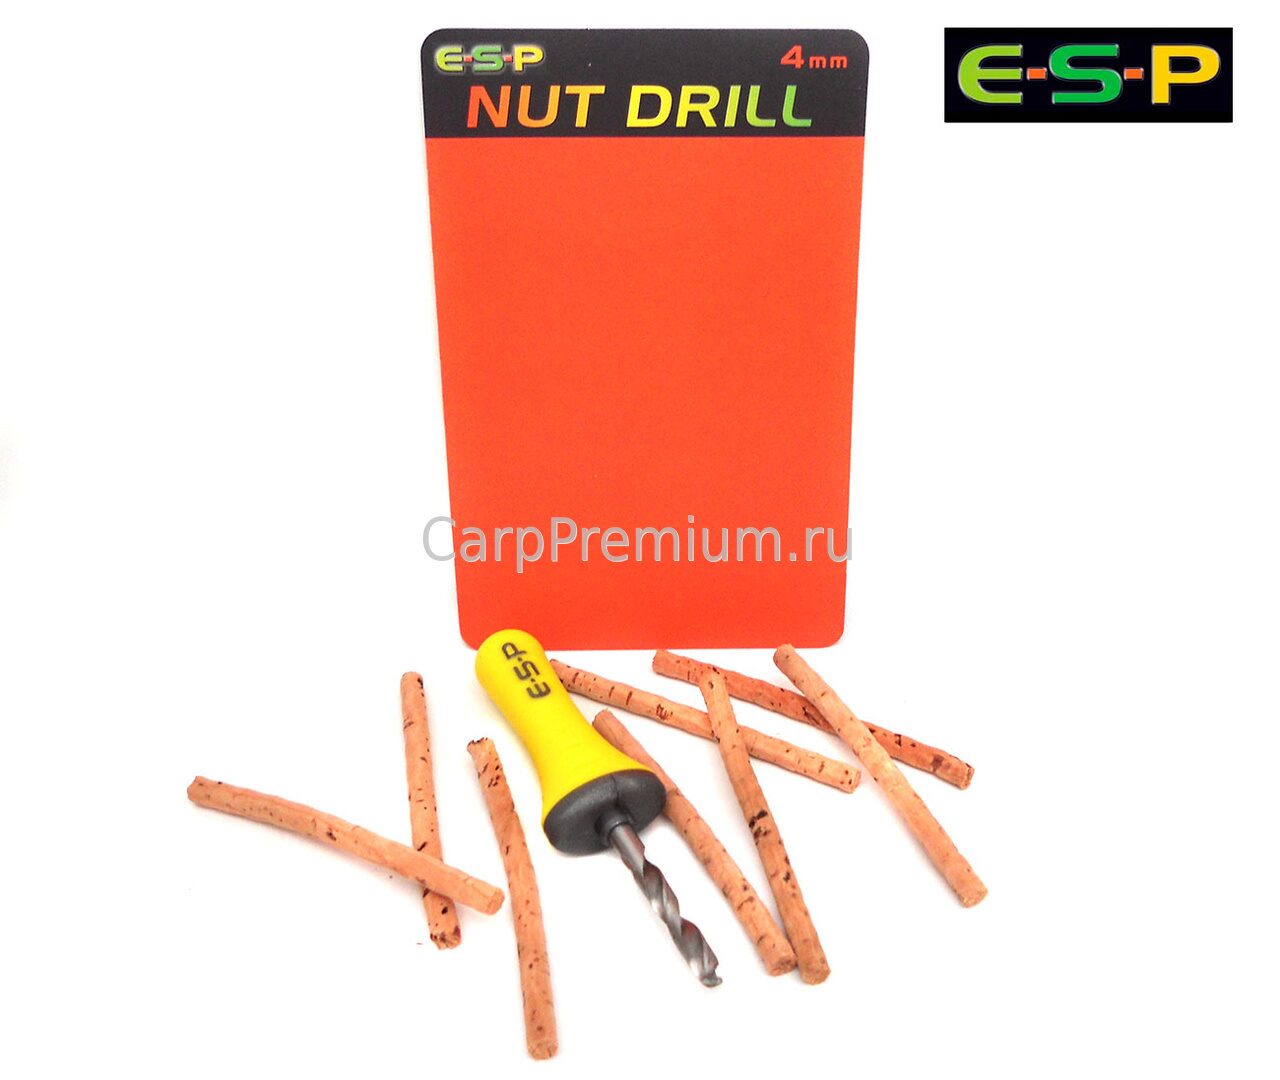 Сверло 4 мм ESP (ЕСП) - Nut Drill Stainless Steel